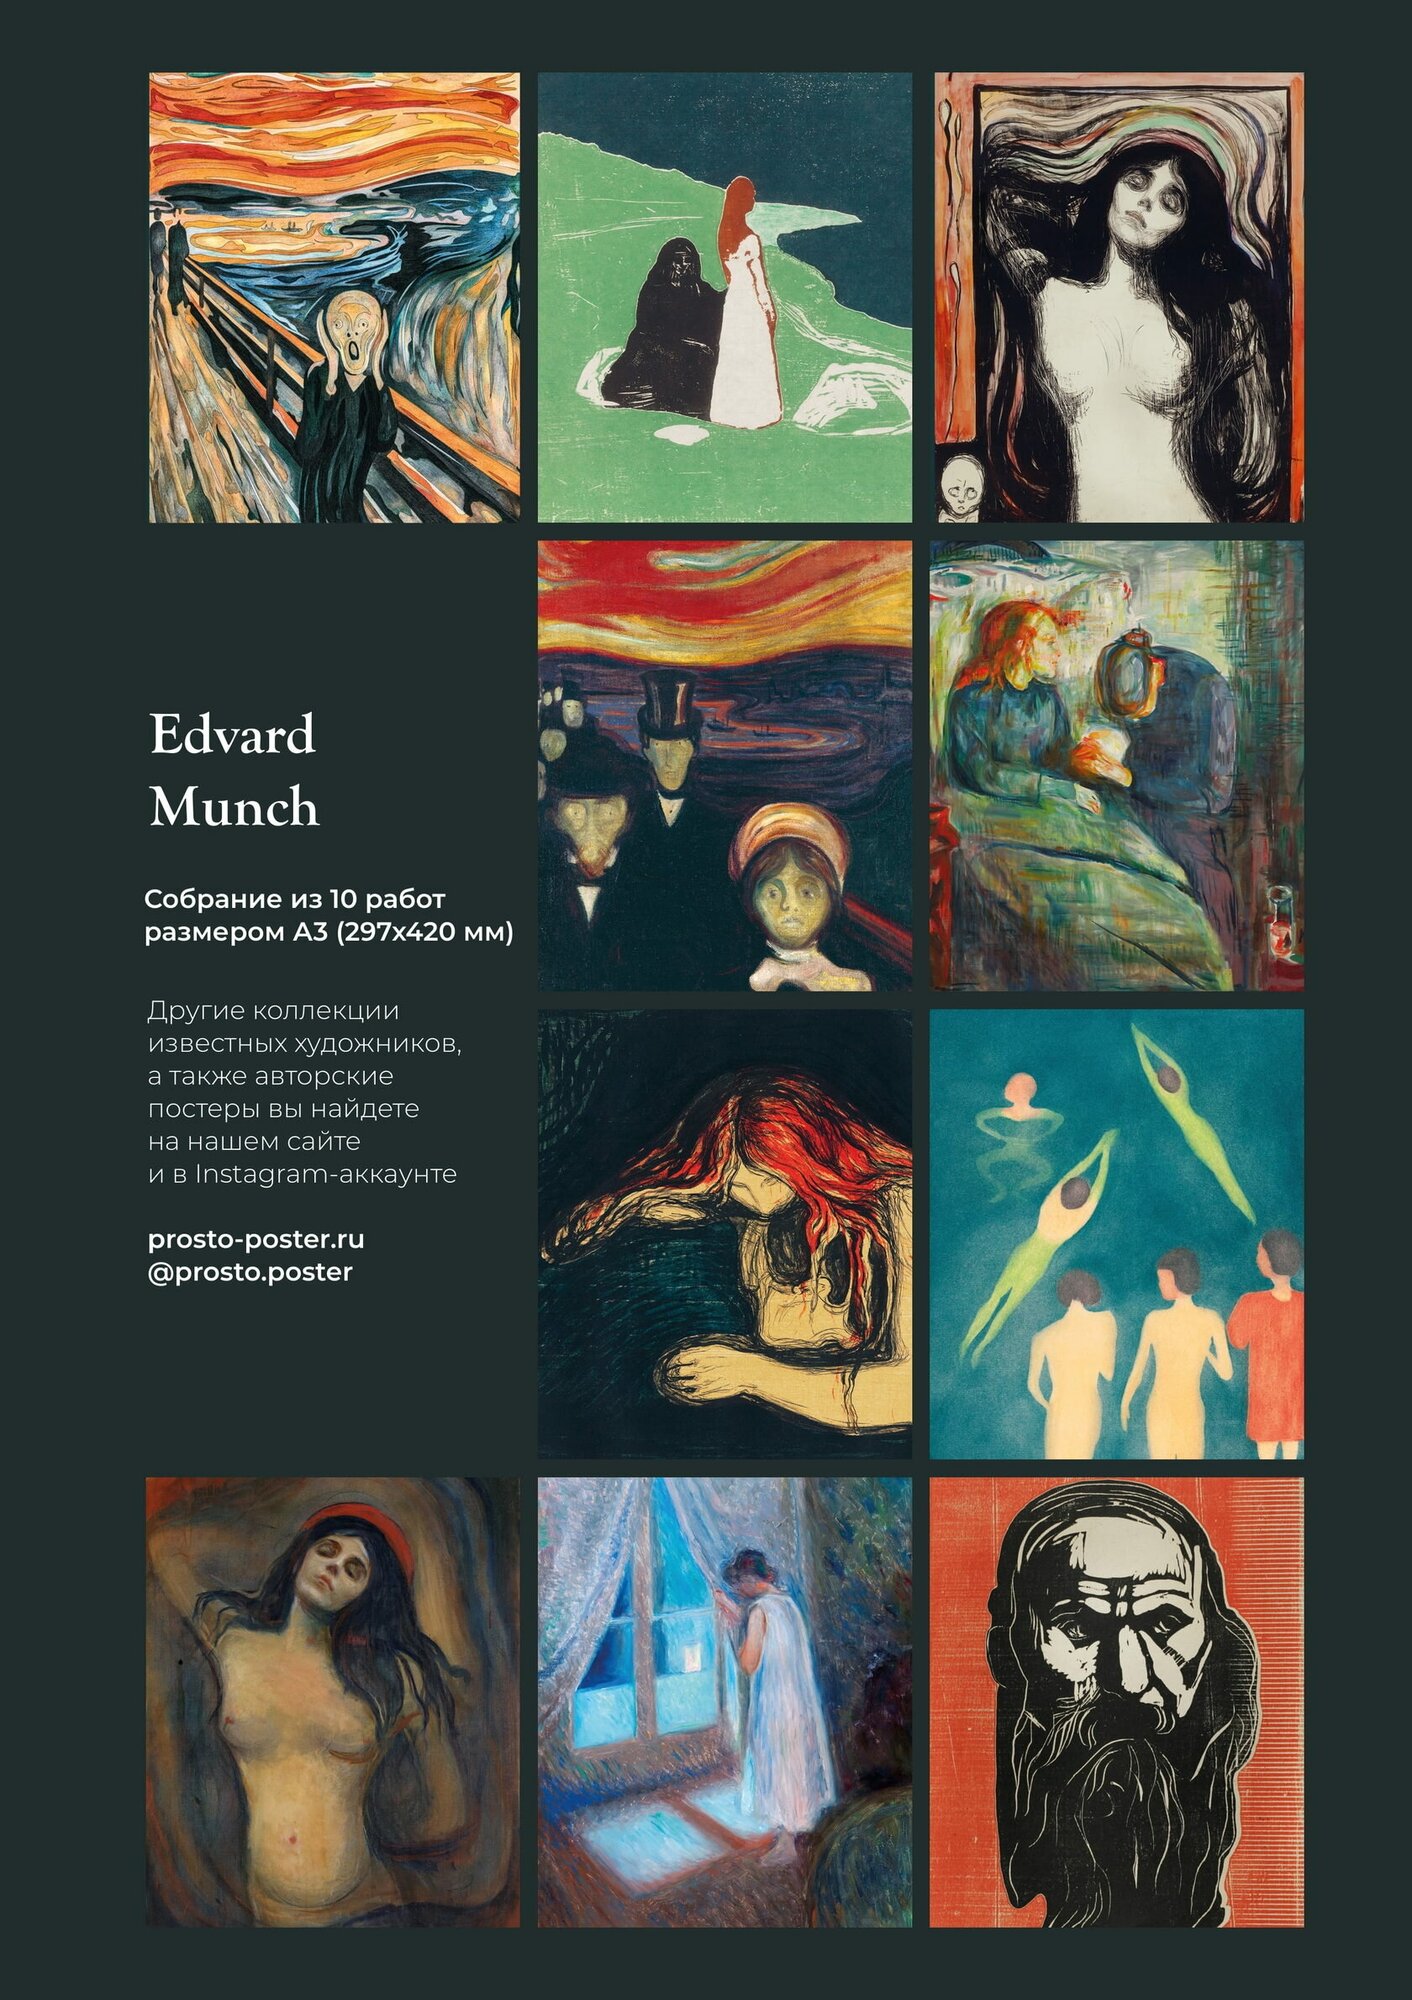 Эдвард Мунк: набор из 10 постеров с лучшими картинами